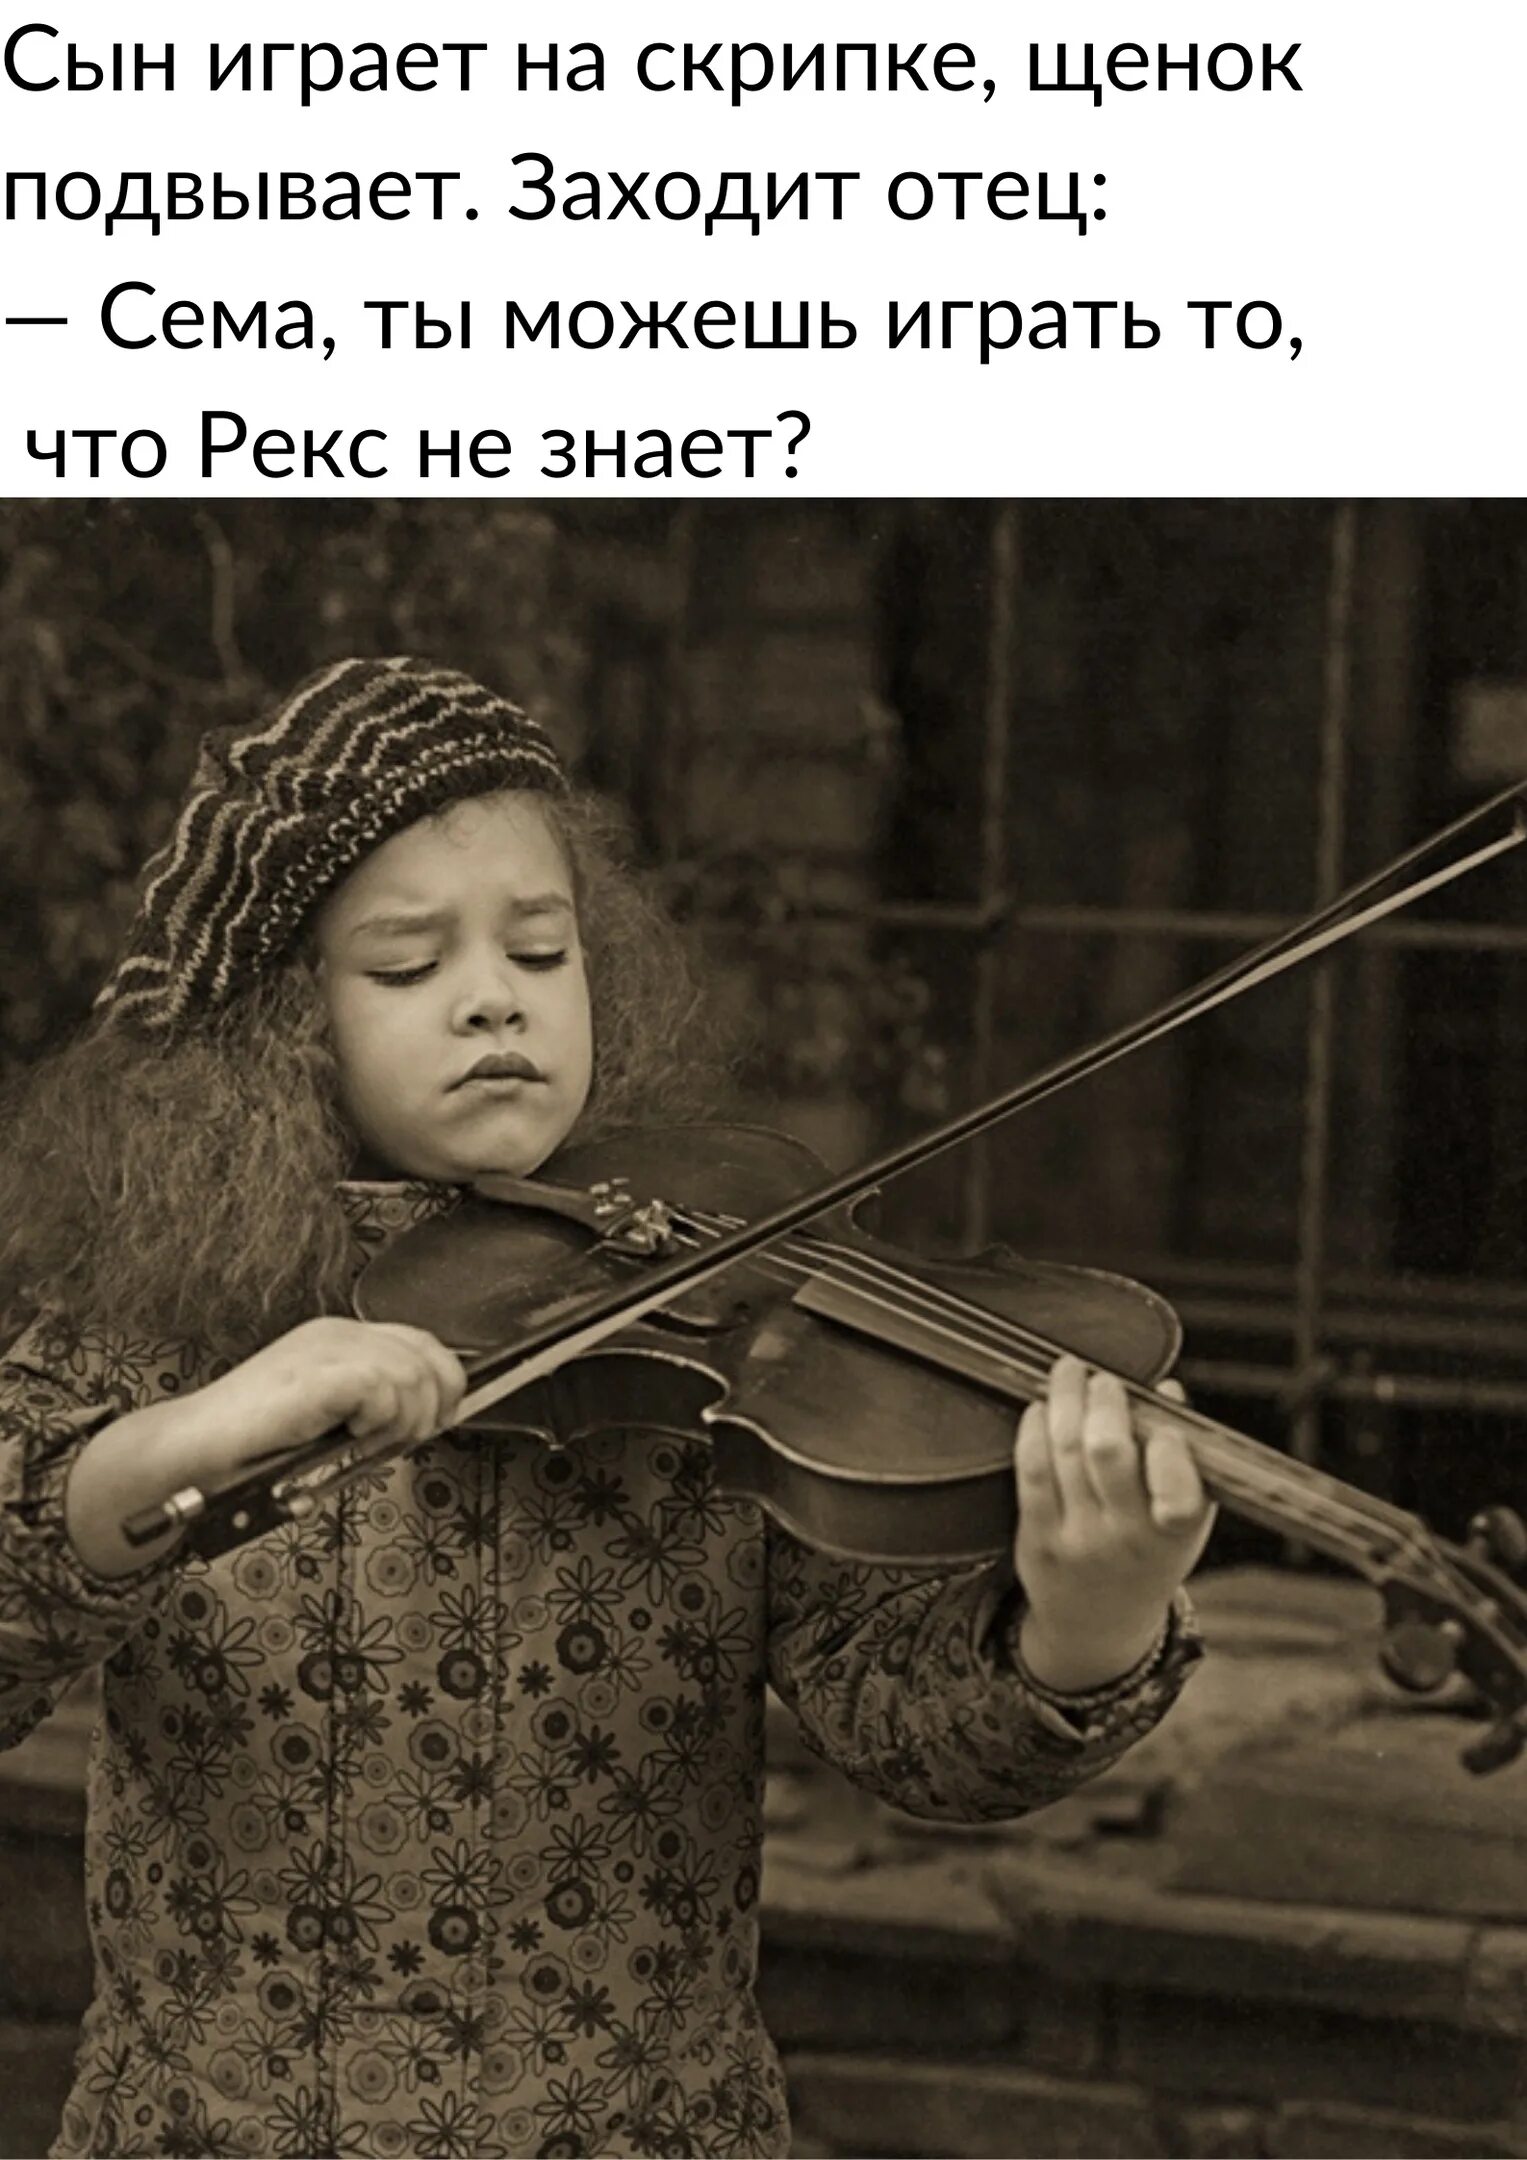 Мальчик искал скрипку. Девочка со скрипкой. Мальчик со скрипкой. Маленький скрипач. Еврейский мальчик со скрипкой.